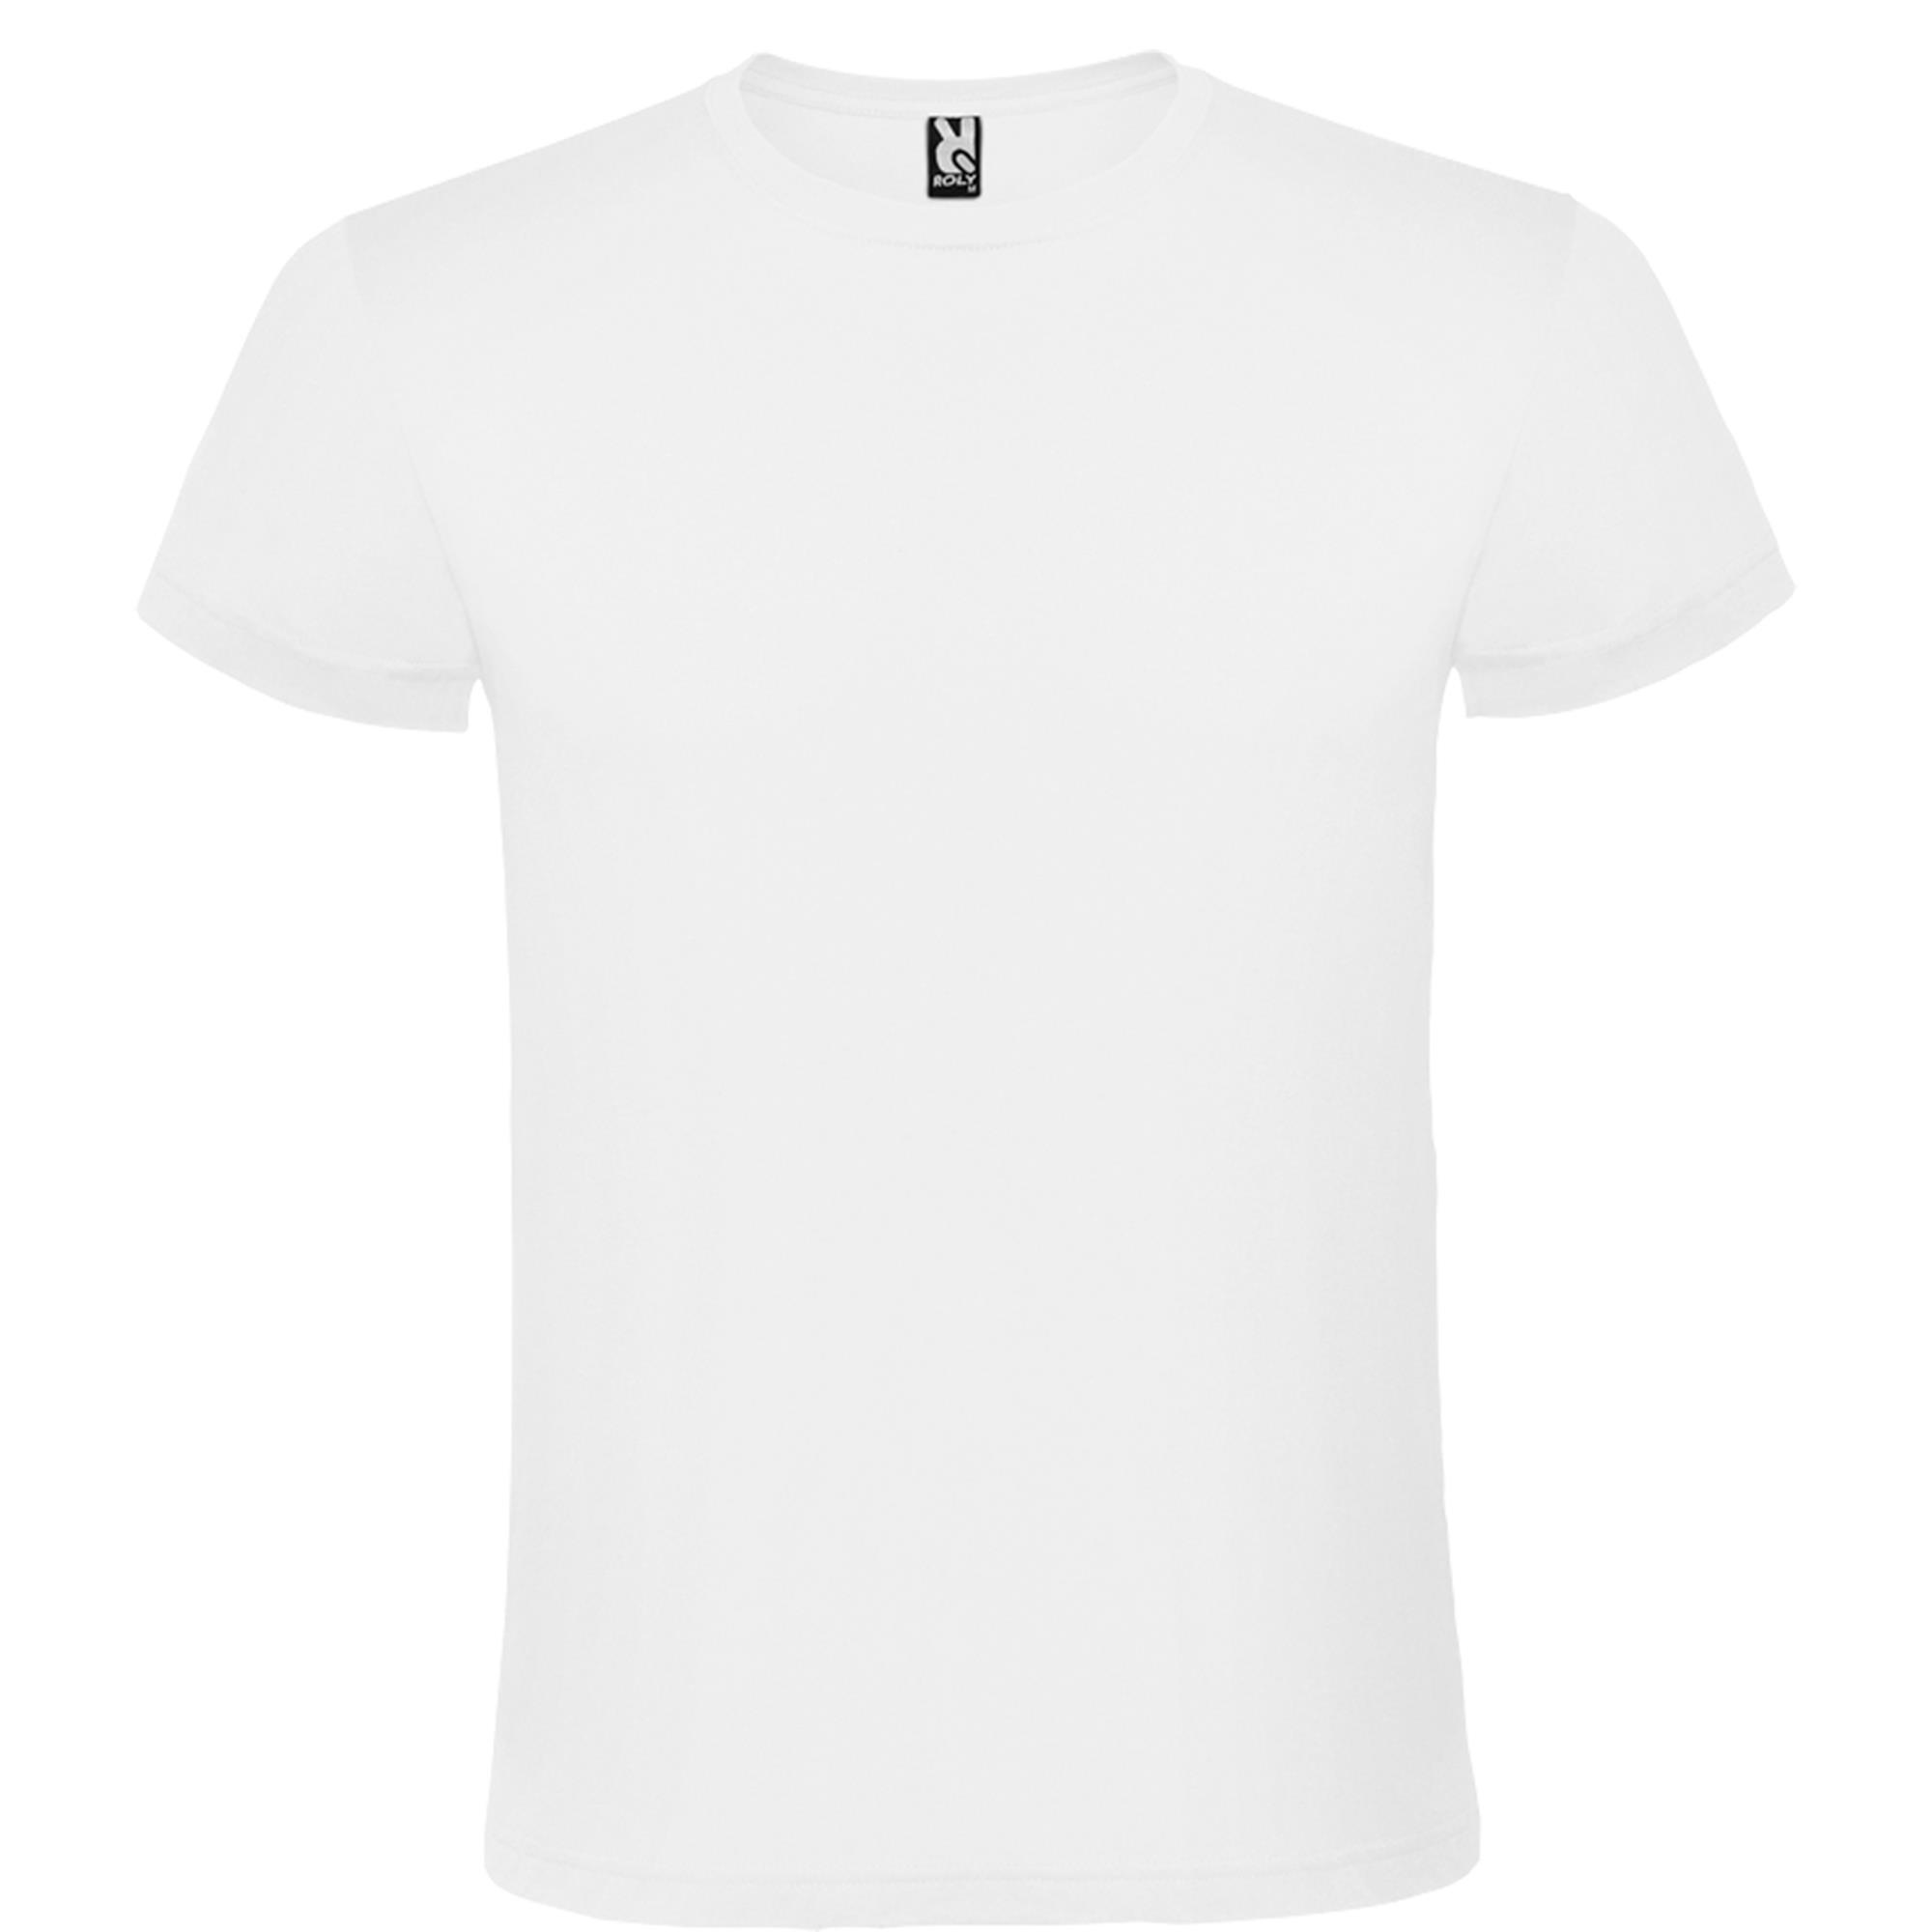 Rondgebreide T-shirt unisex voor volwassen wit personalisatie mogelijk